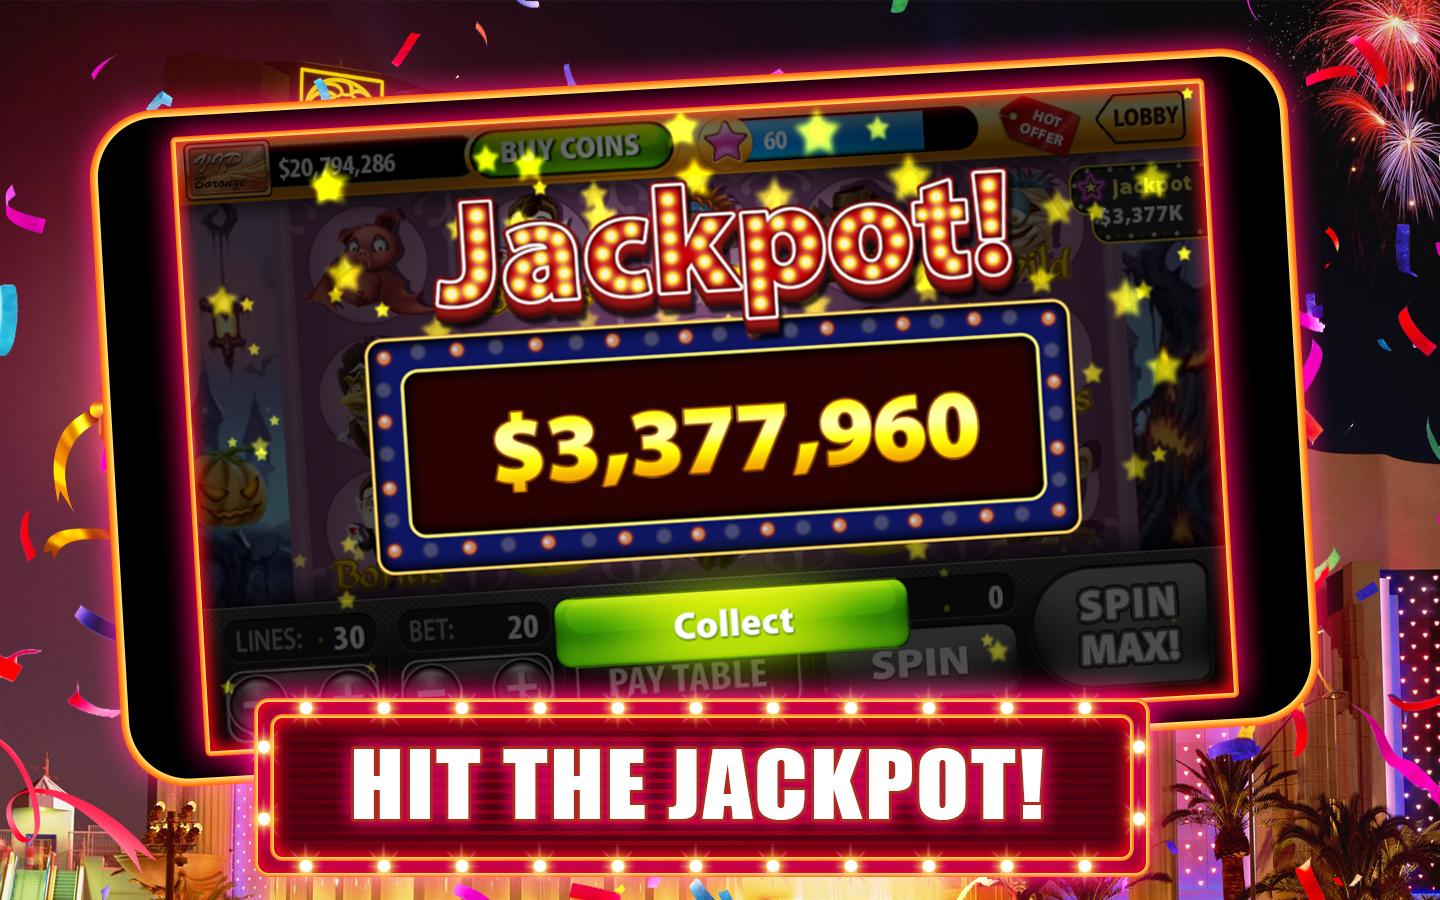 How to win at slot machine in ottawa casino